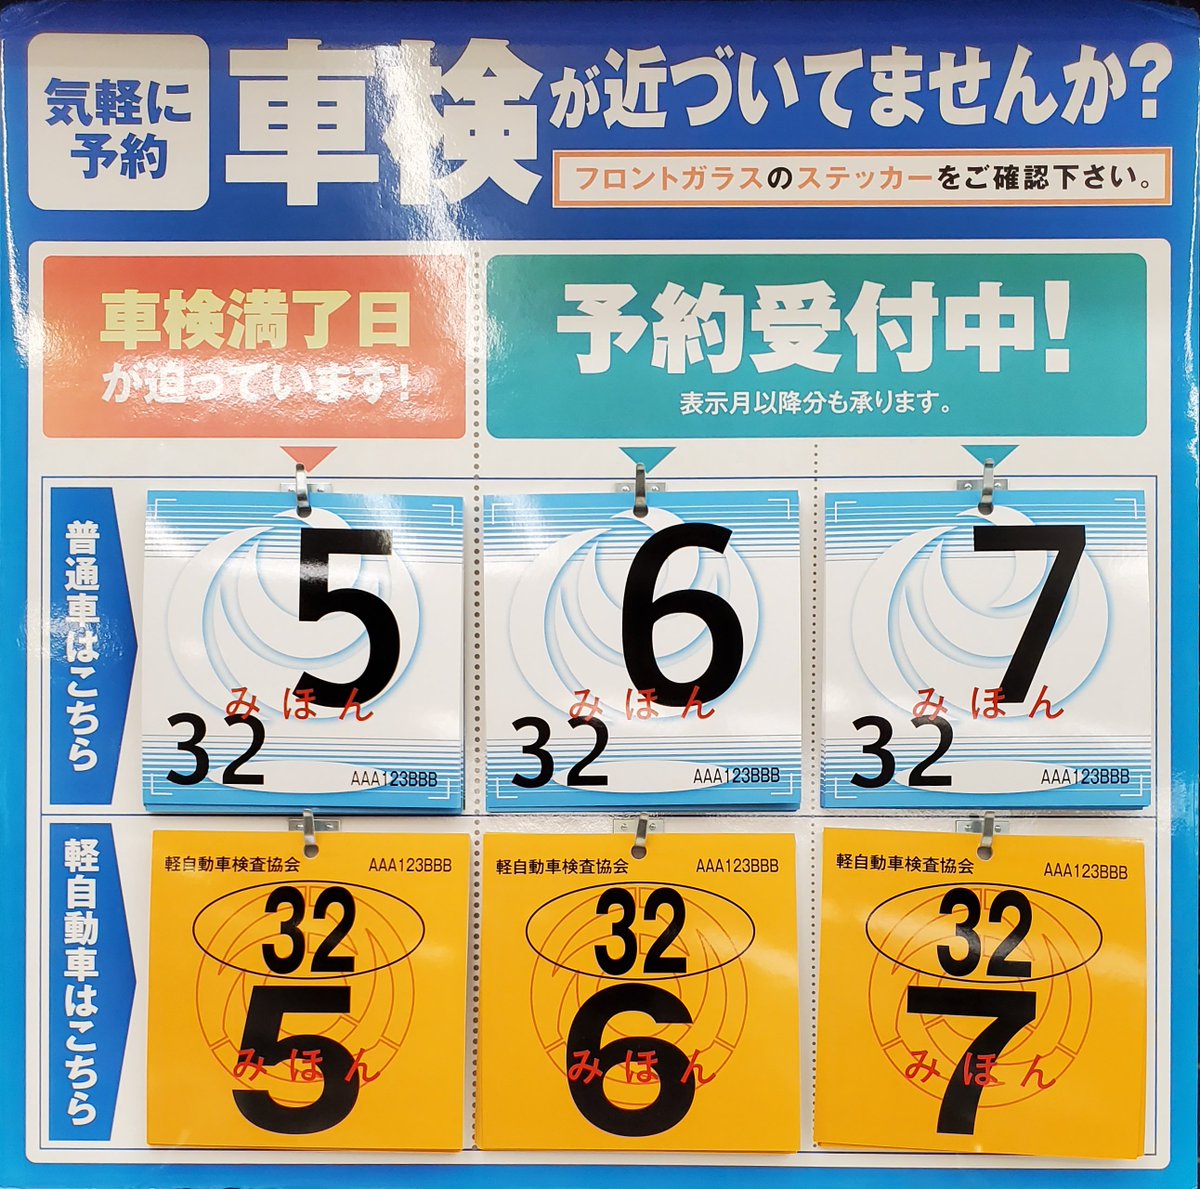 スーパーオートバックス静岡中原 Ar Twitter 車検ステッカーをご存知でしょうか 車のフロントガラスを見れば 車検証を見なくても車検の満了時期がわかります オートバックス車検 車検ステッカー